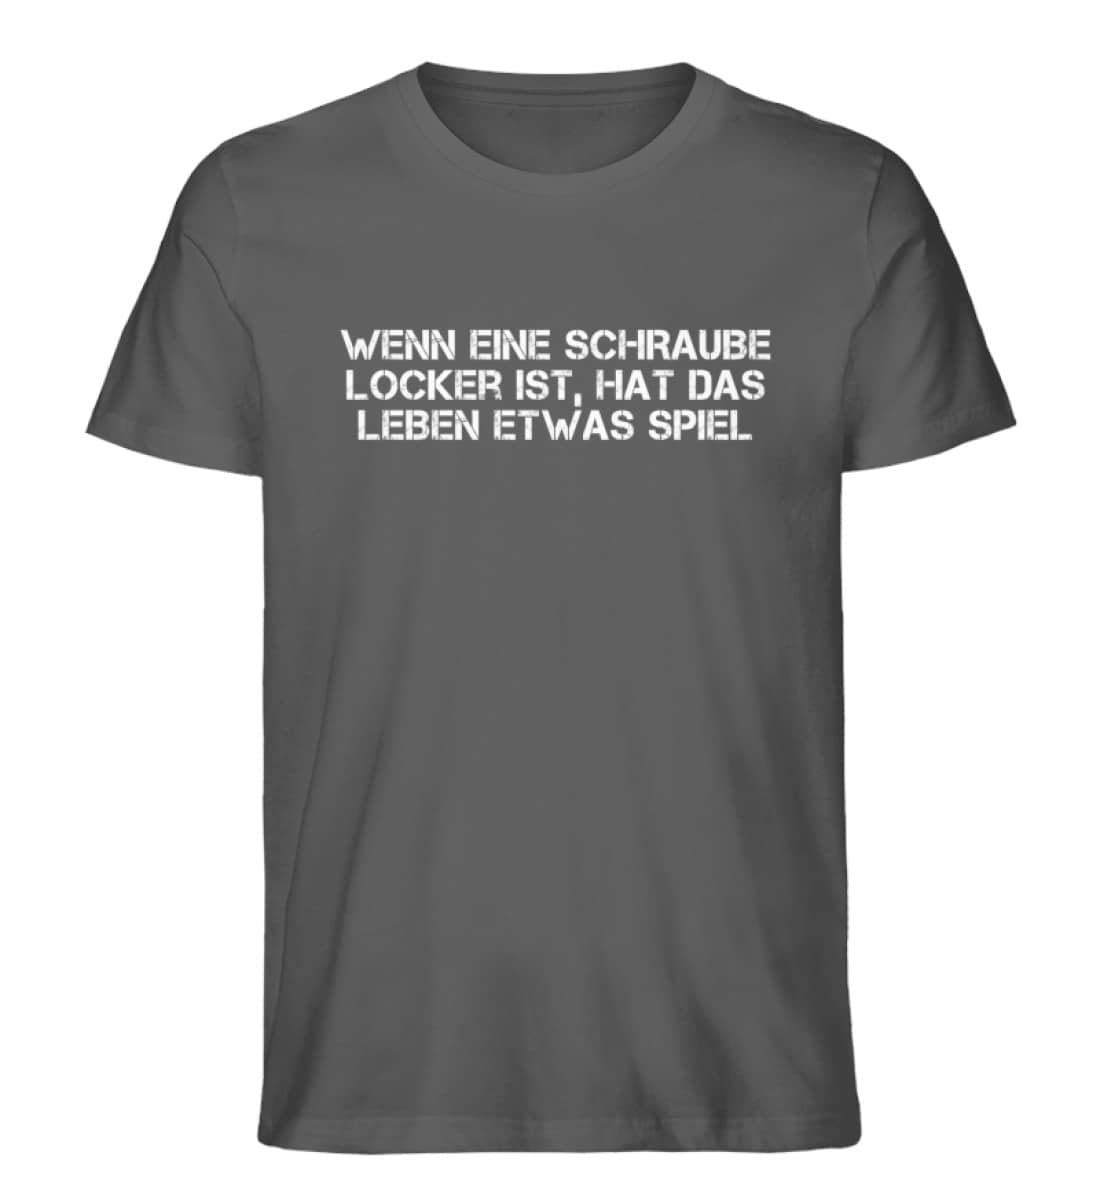 Schraube locker - Herren Premium Organic Shirt-6896